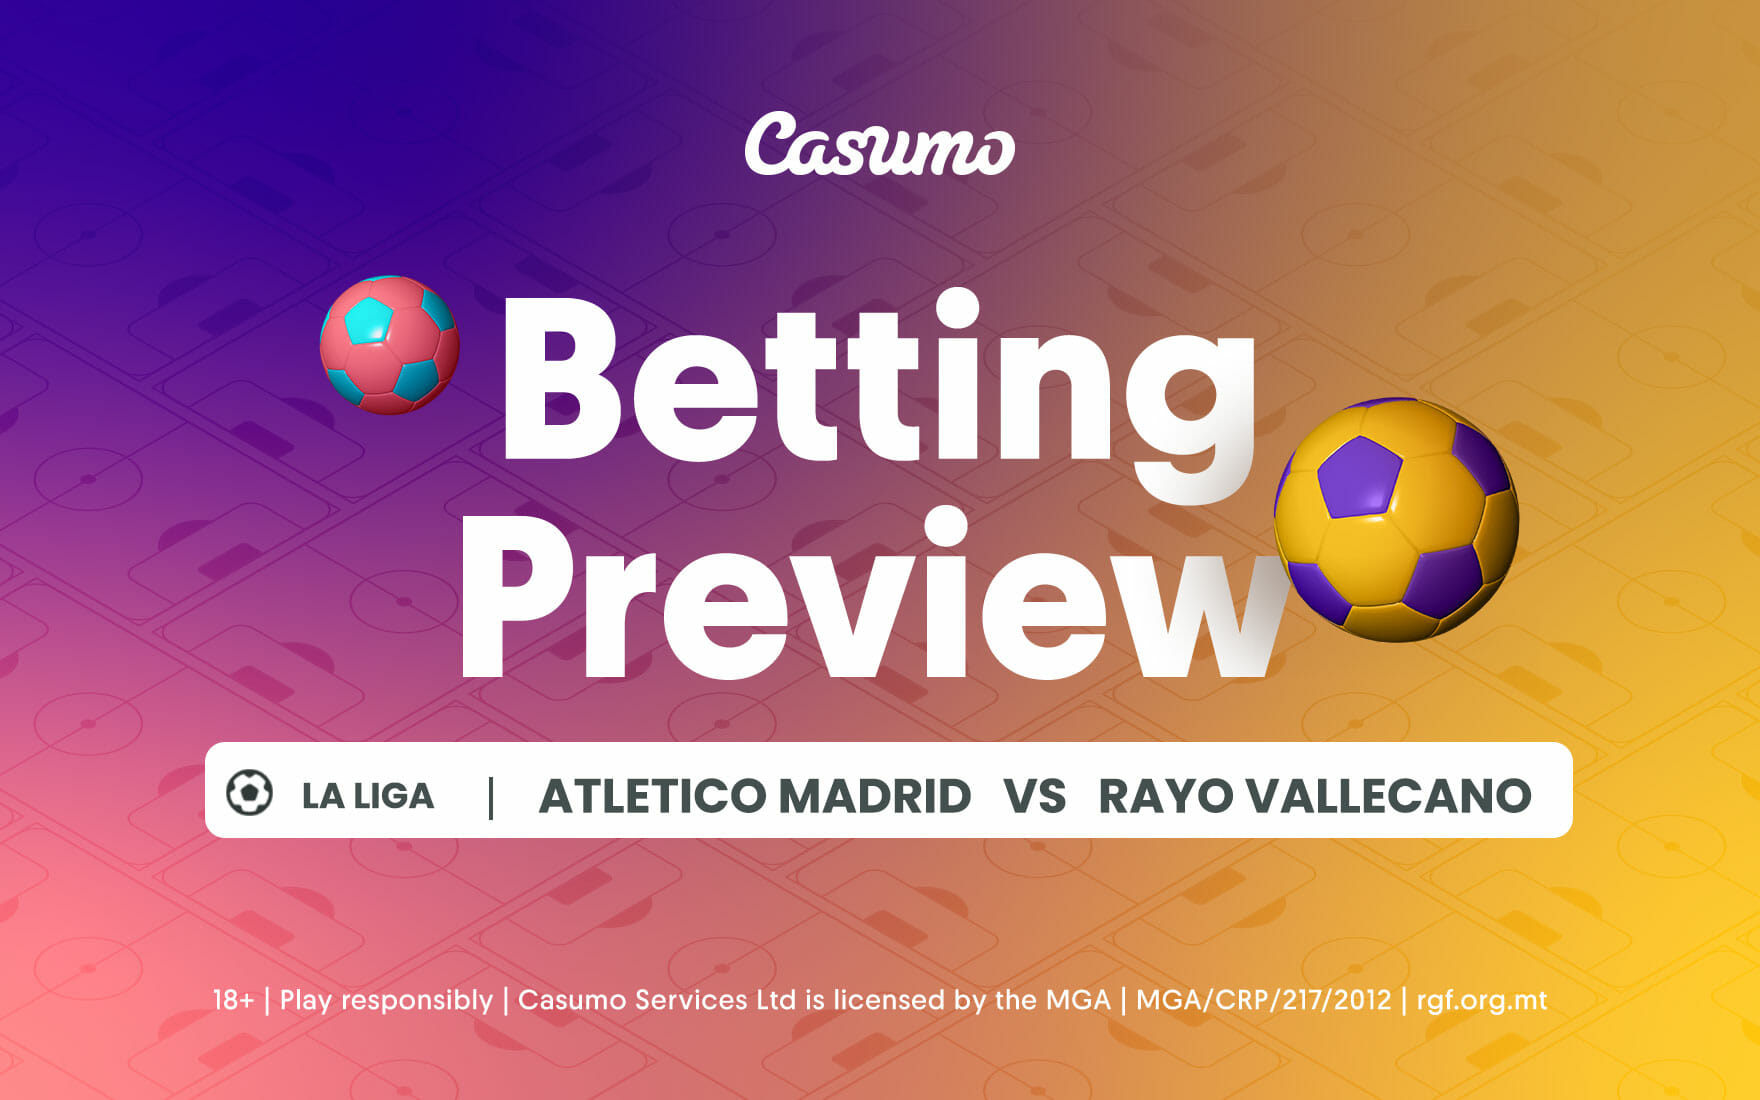 Atletico Madrid vs Rayo Vallecano betting tips